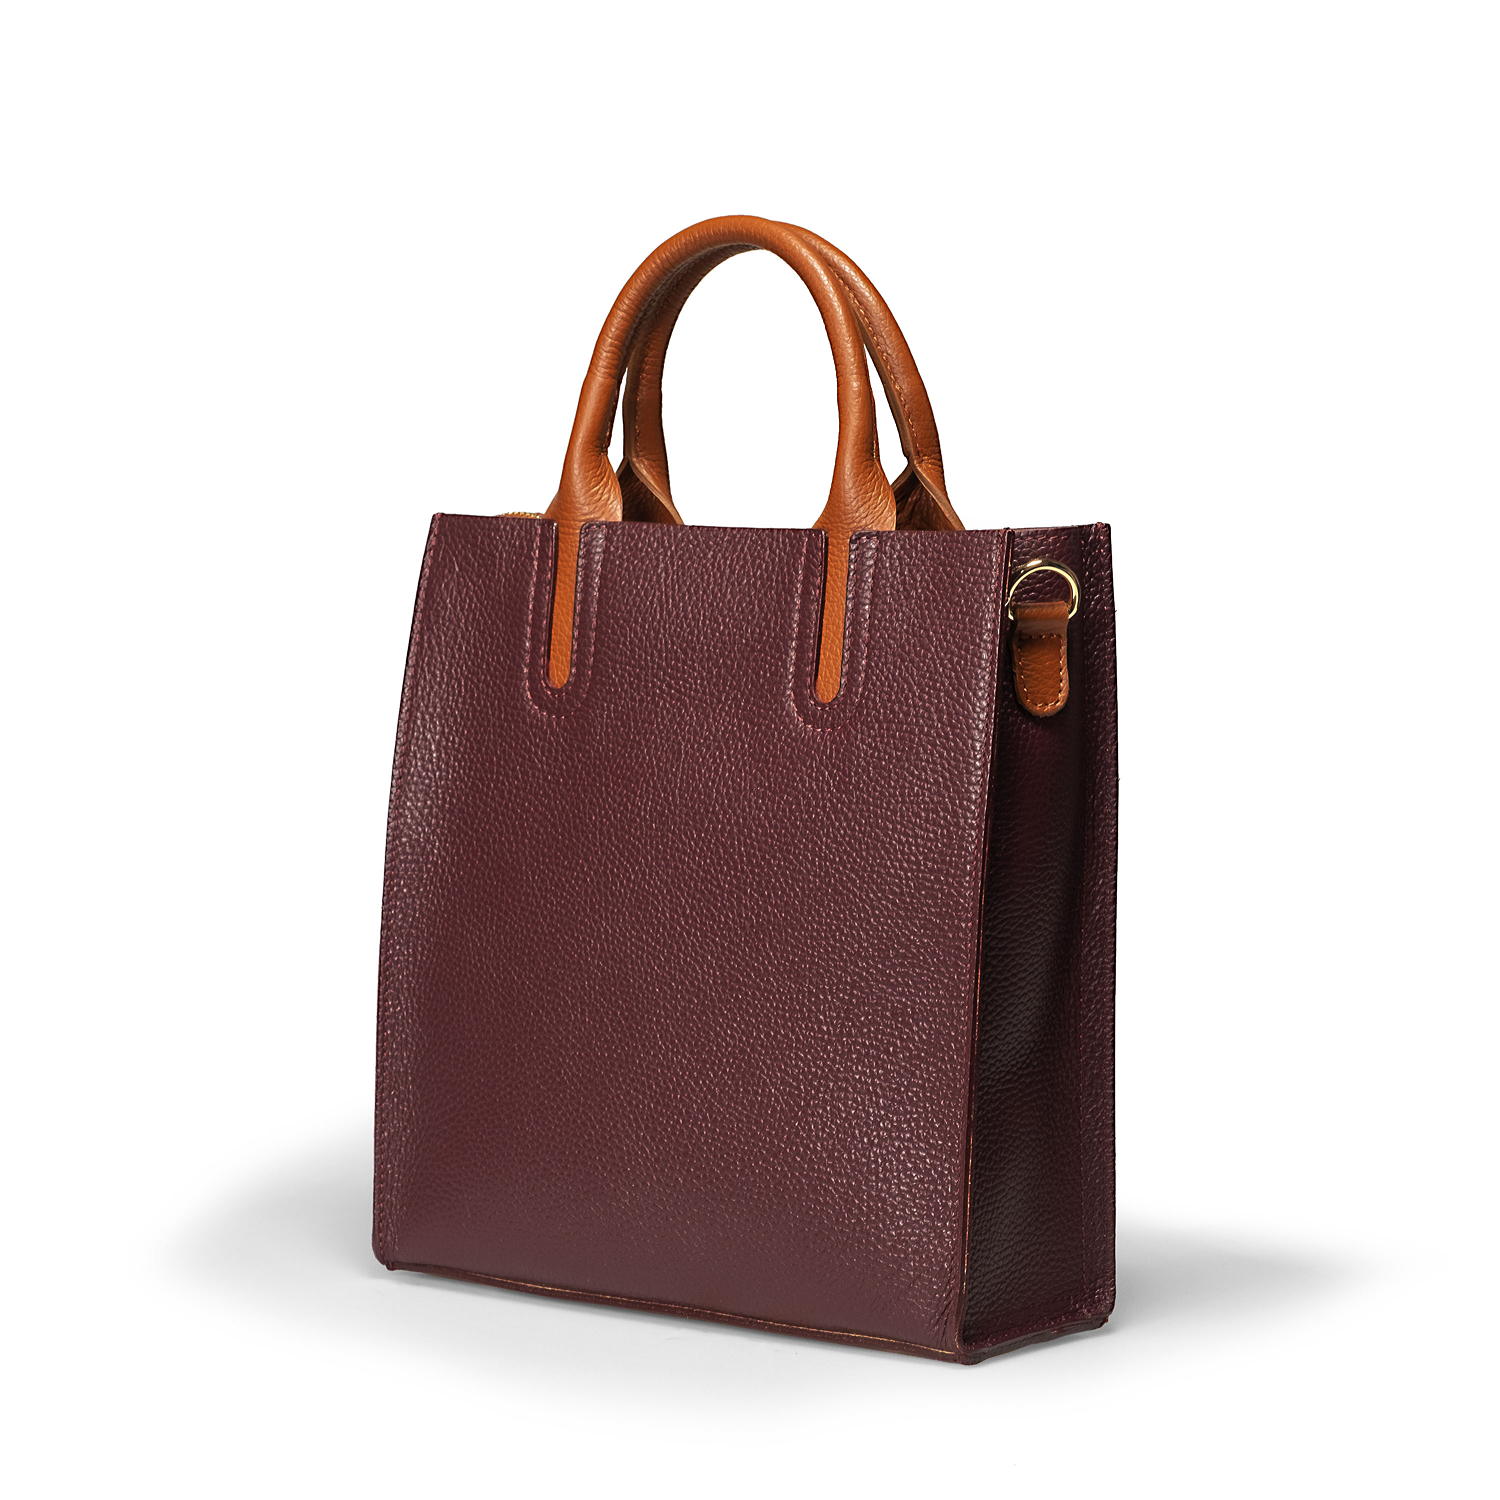 Wholesale Leather Bags Online, Shoulder Bag - Evita